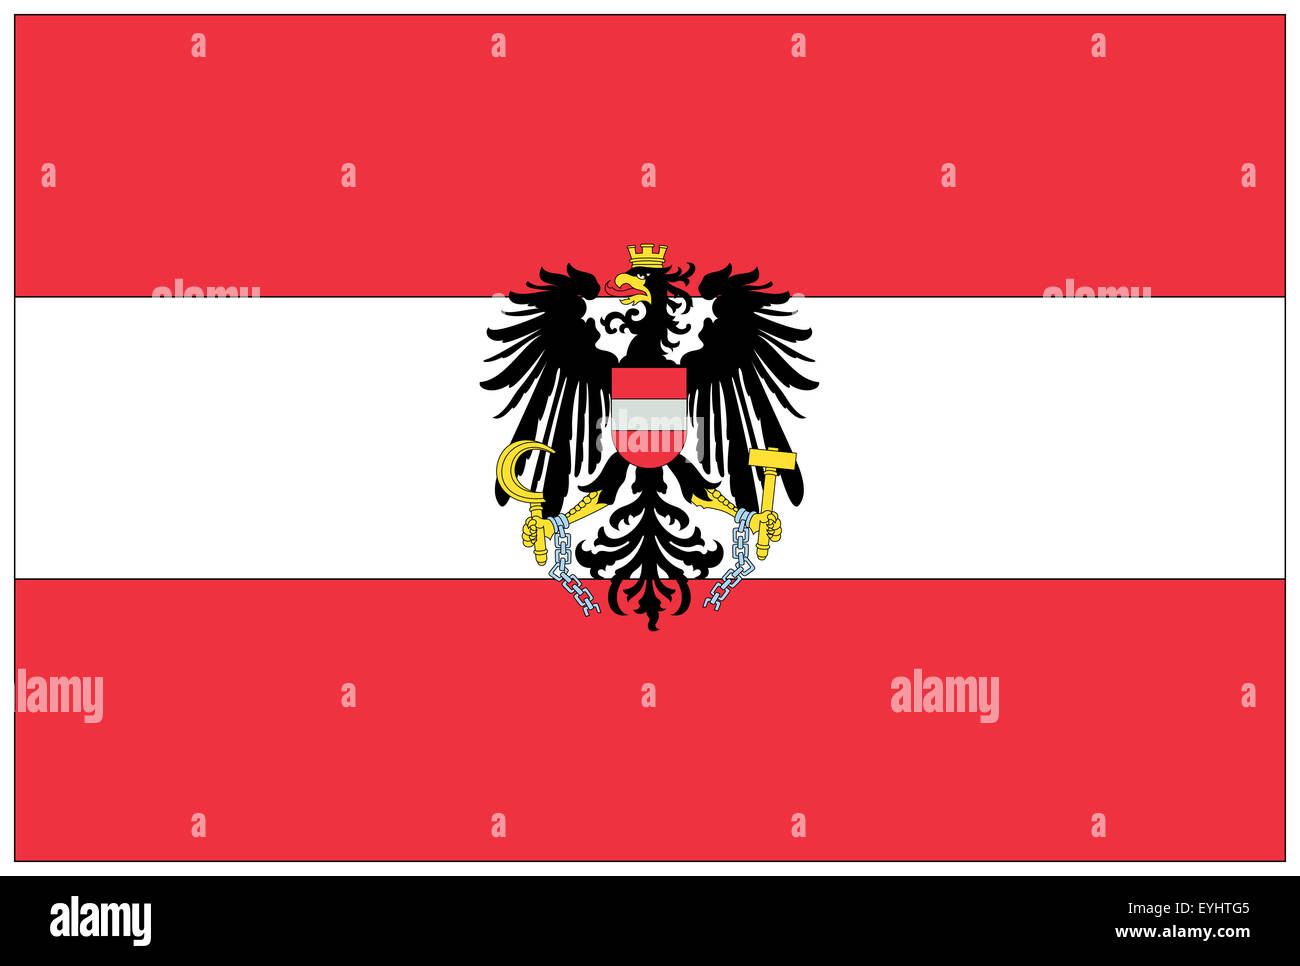 https://c8.alamy.com/comp/EYHTG5/fahne-oesterreich-flag-austria-EYHTG5.jpg